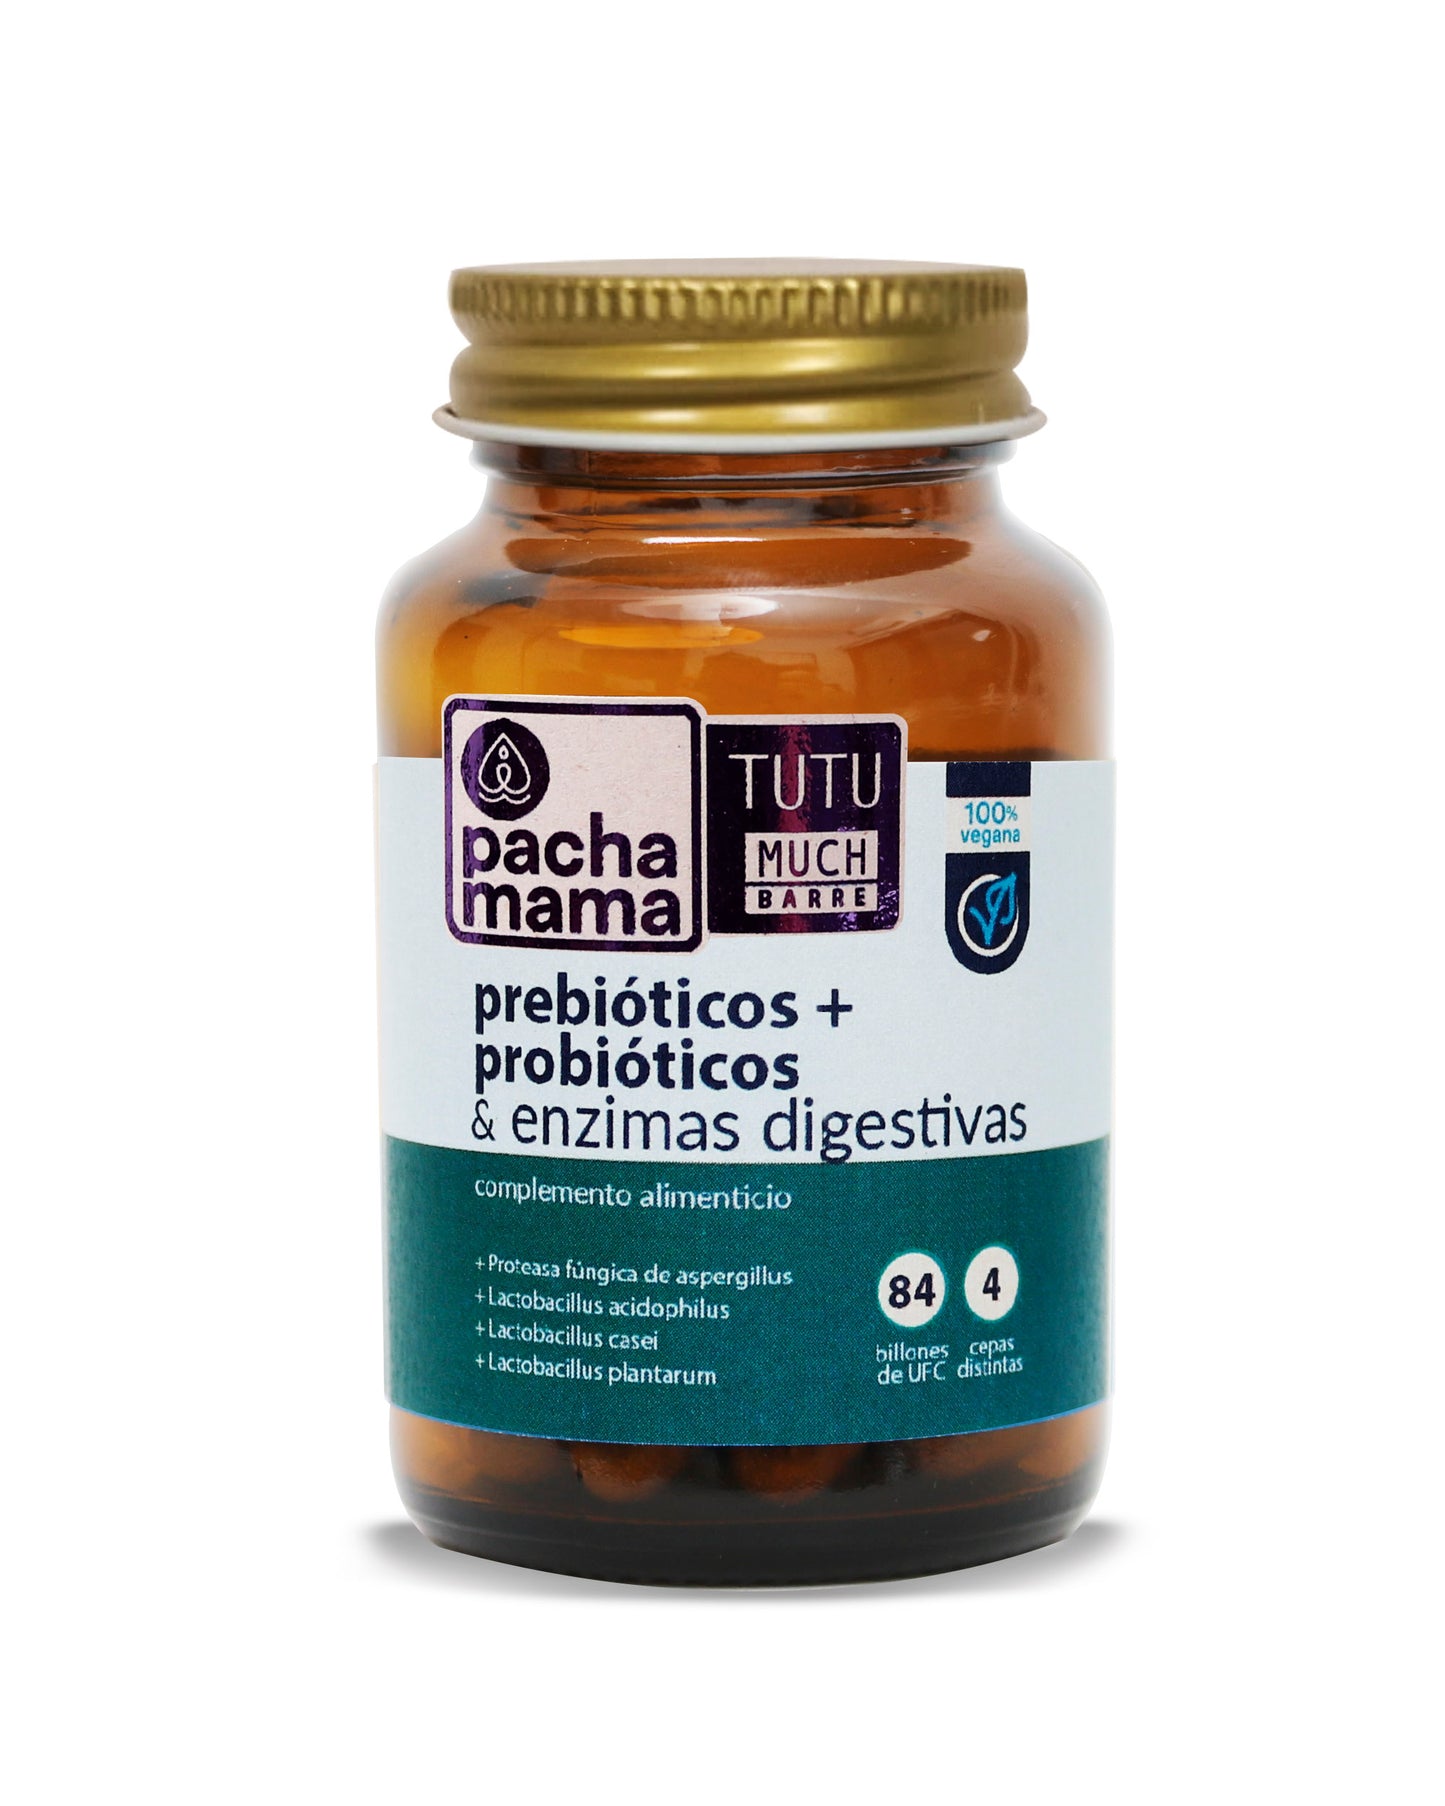 TUTUMUCH BARRE Prebióticos + Probióticos + Enzimas Digestivas - 84 Billones - 500mg - 30 Cápsulas Vegetales